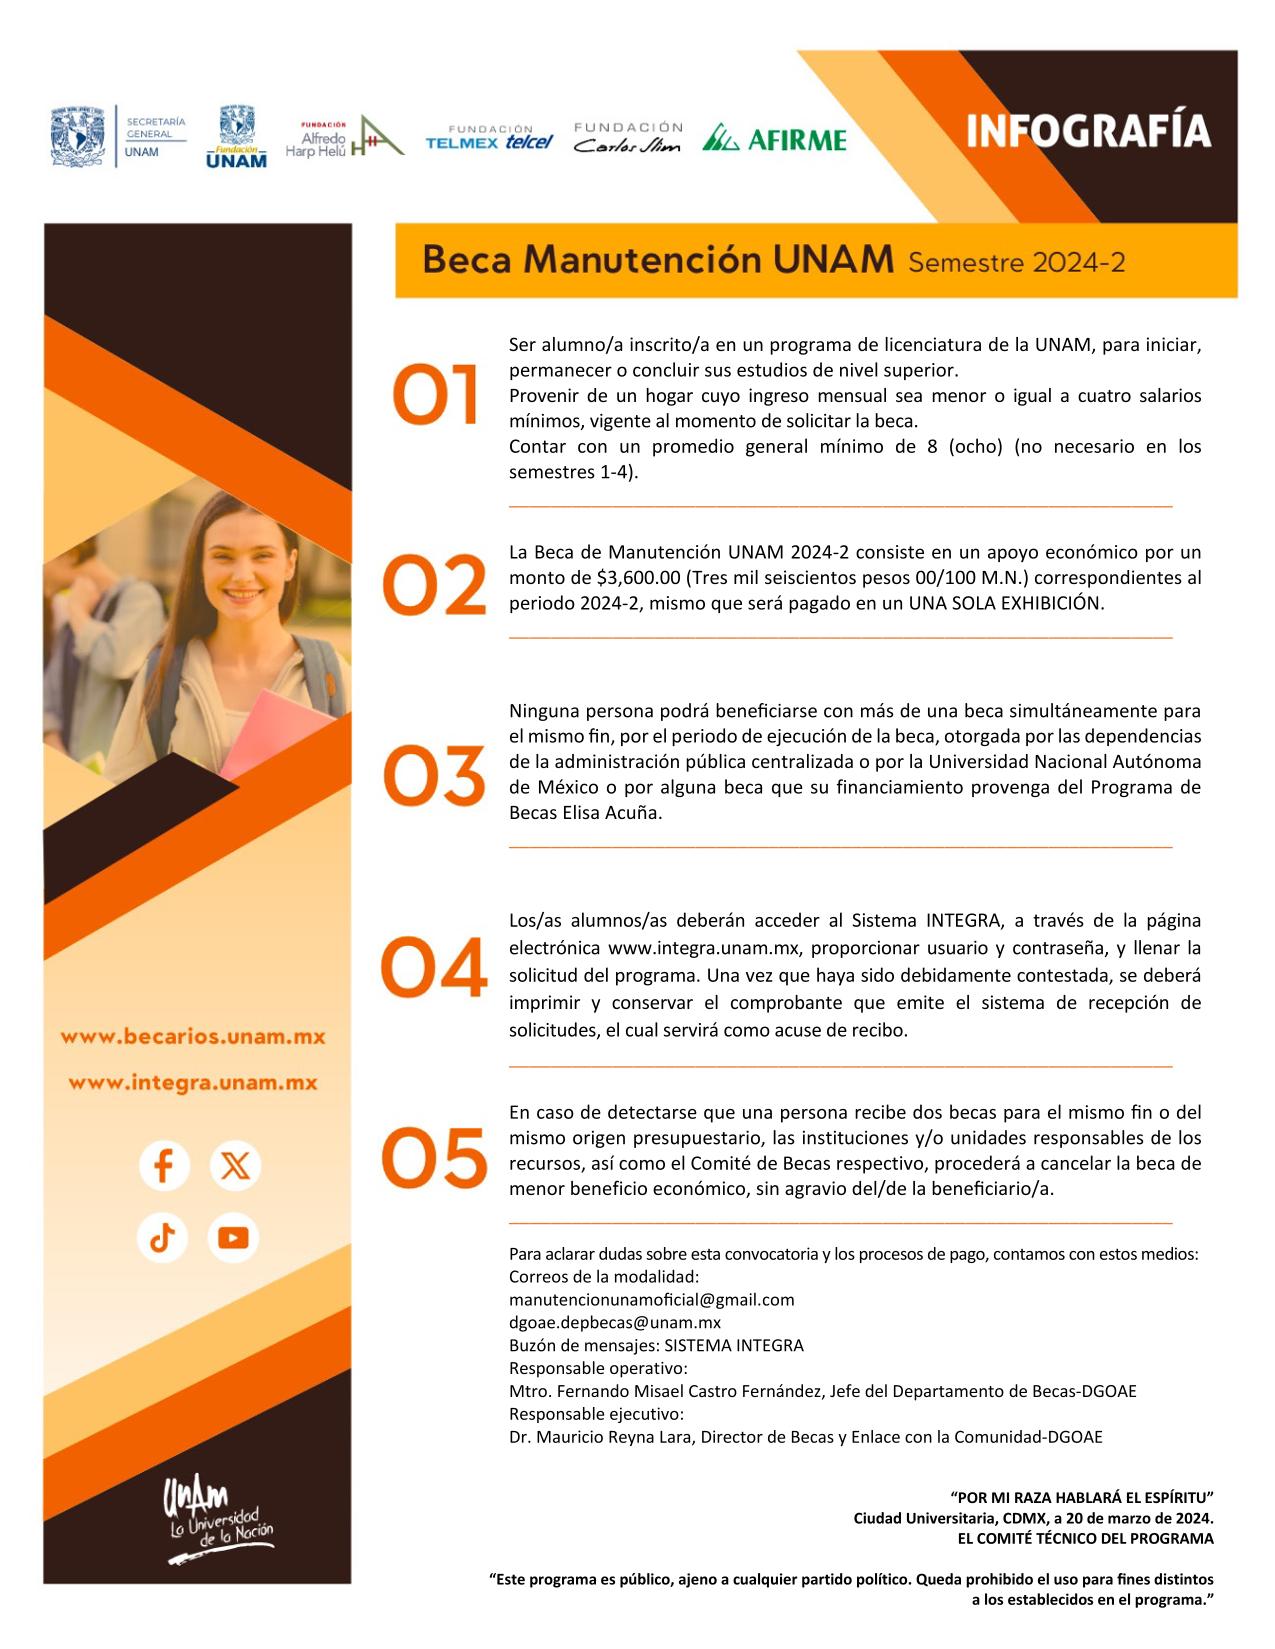 5.- BECA DE MANUTENCIÓN UNAM 2024-2